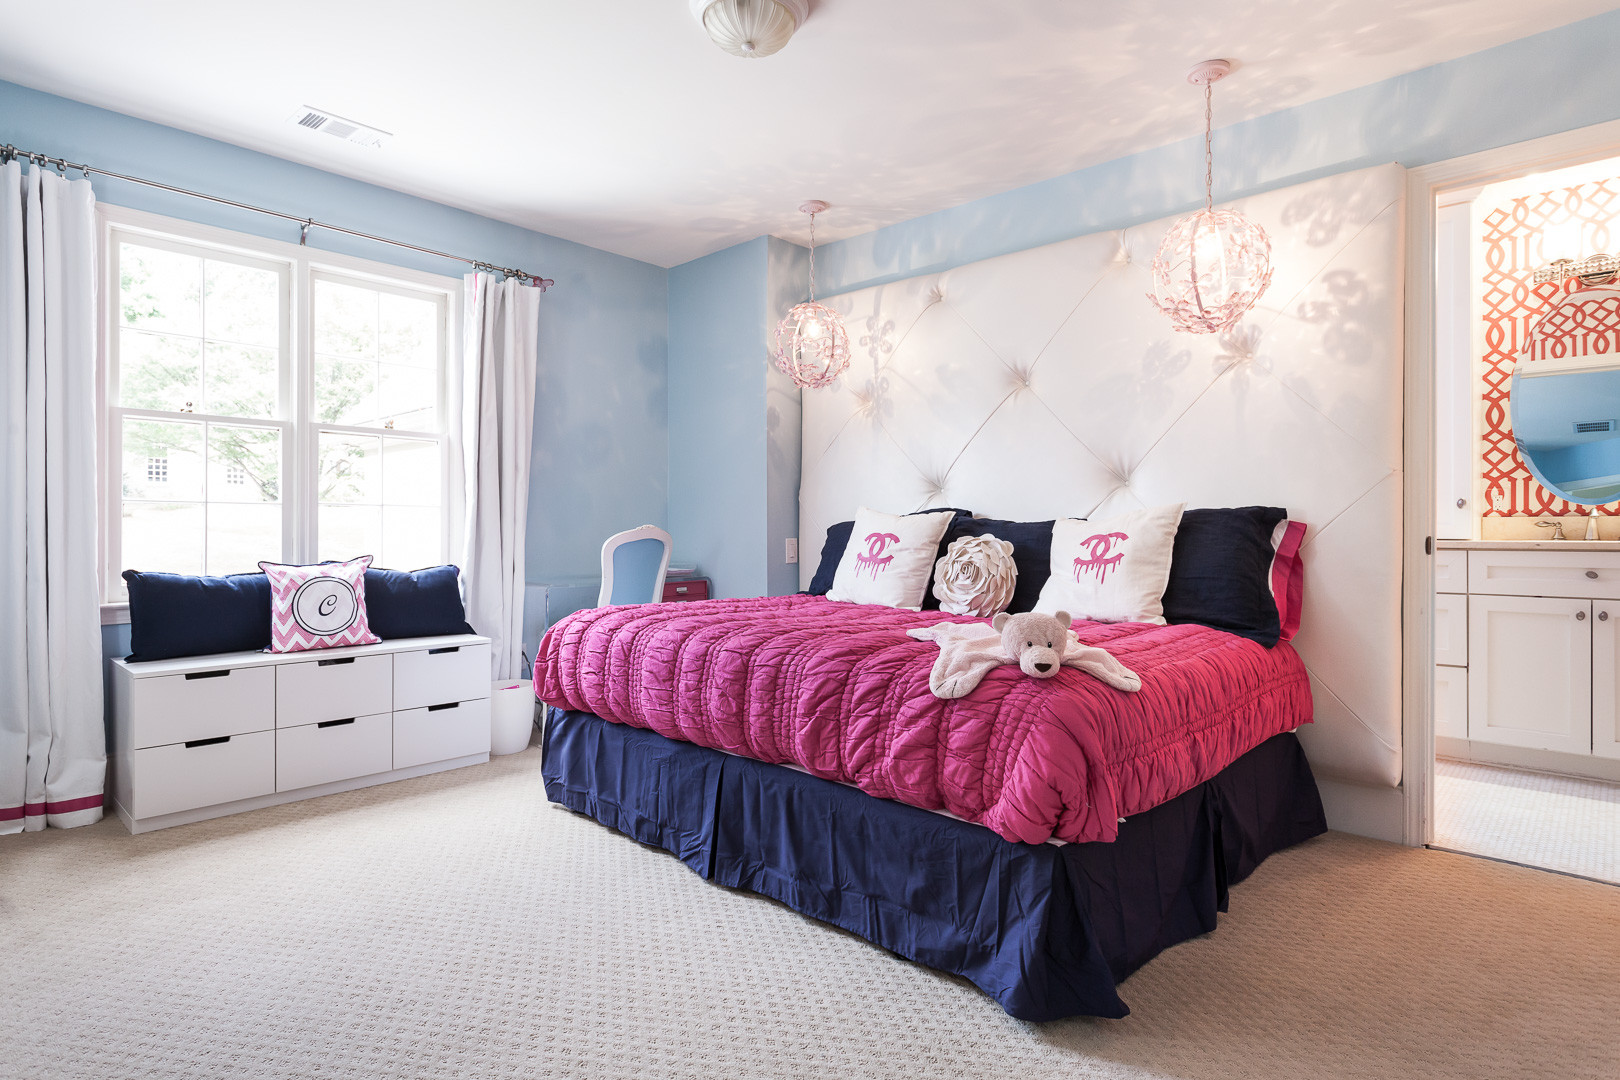 Chanel Bedroom - Photos & Ideas